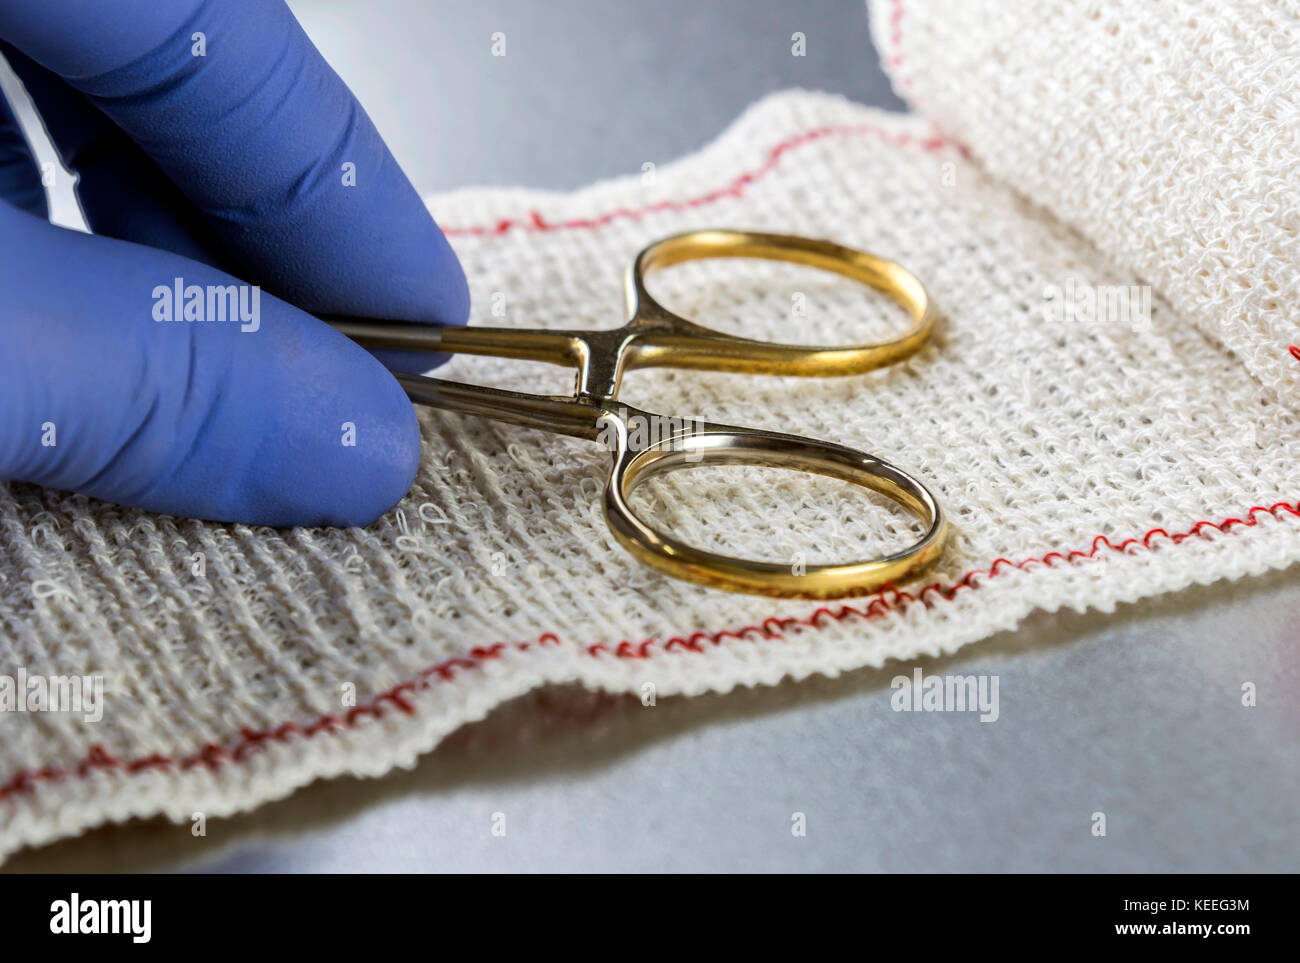 Chirurgische Schere auf einen Verband, konzeptionelle Bild Stockfoto